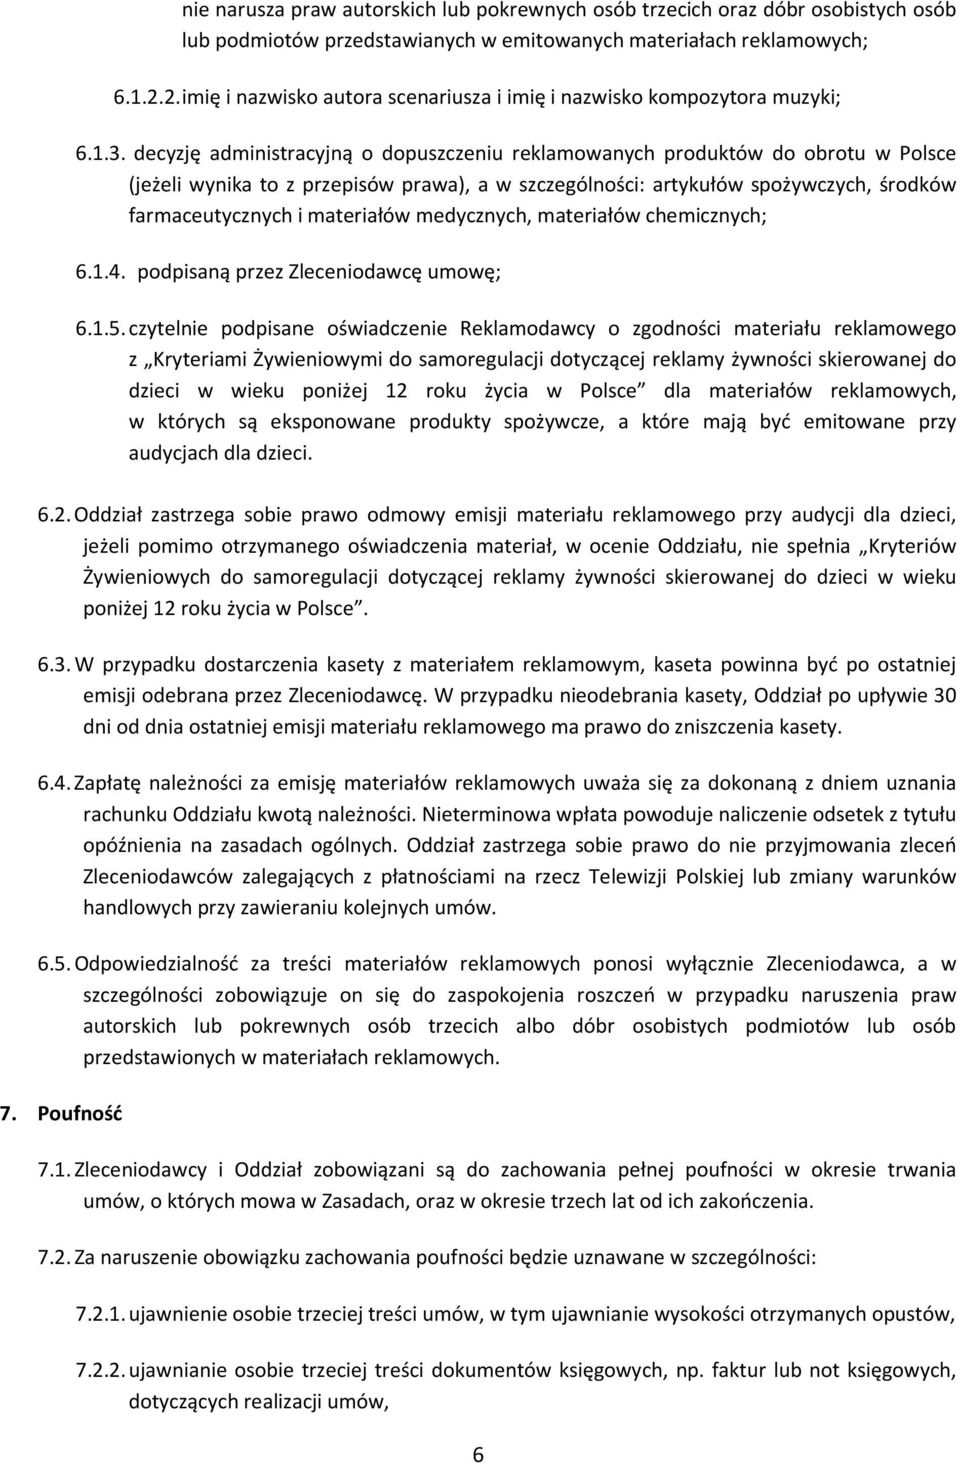 decyzję administracyjną o dopuszczeniu reklamowanych produktów do obrotu w Polsce (jeżeli wynika to z przepisów prawa), a w szczególności: artykułów spożywczych, środków farmaceutycznych i materiałów